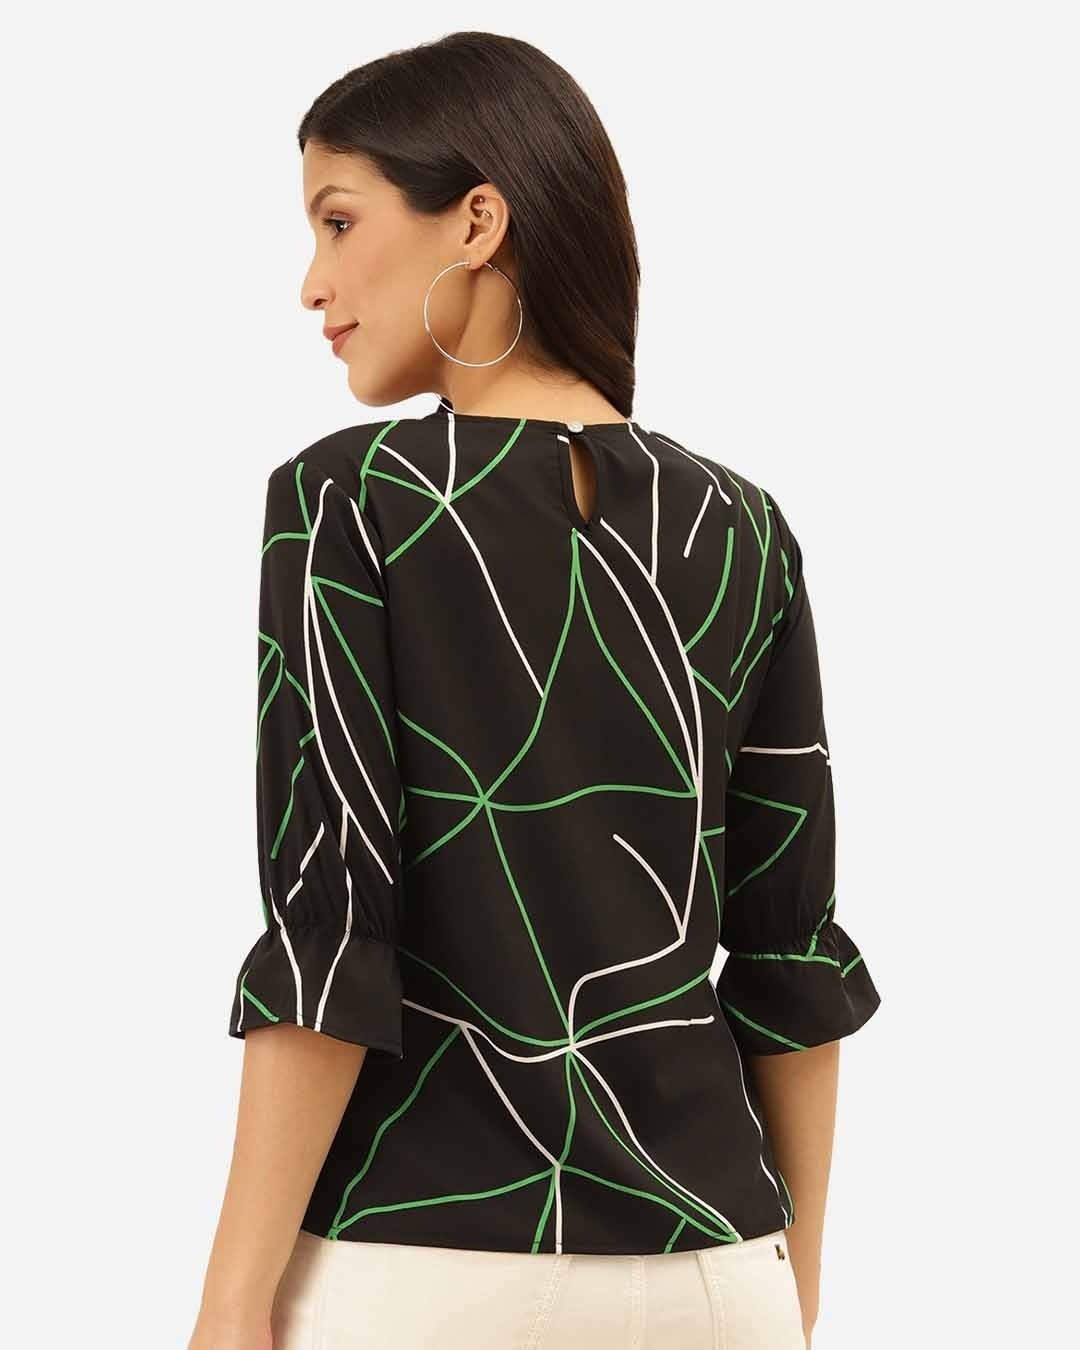 Shop Women Black & Green Abstract Print Regular Top-Design